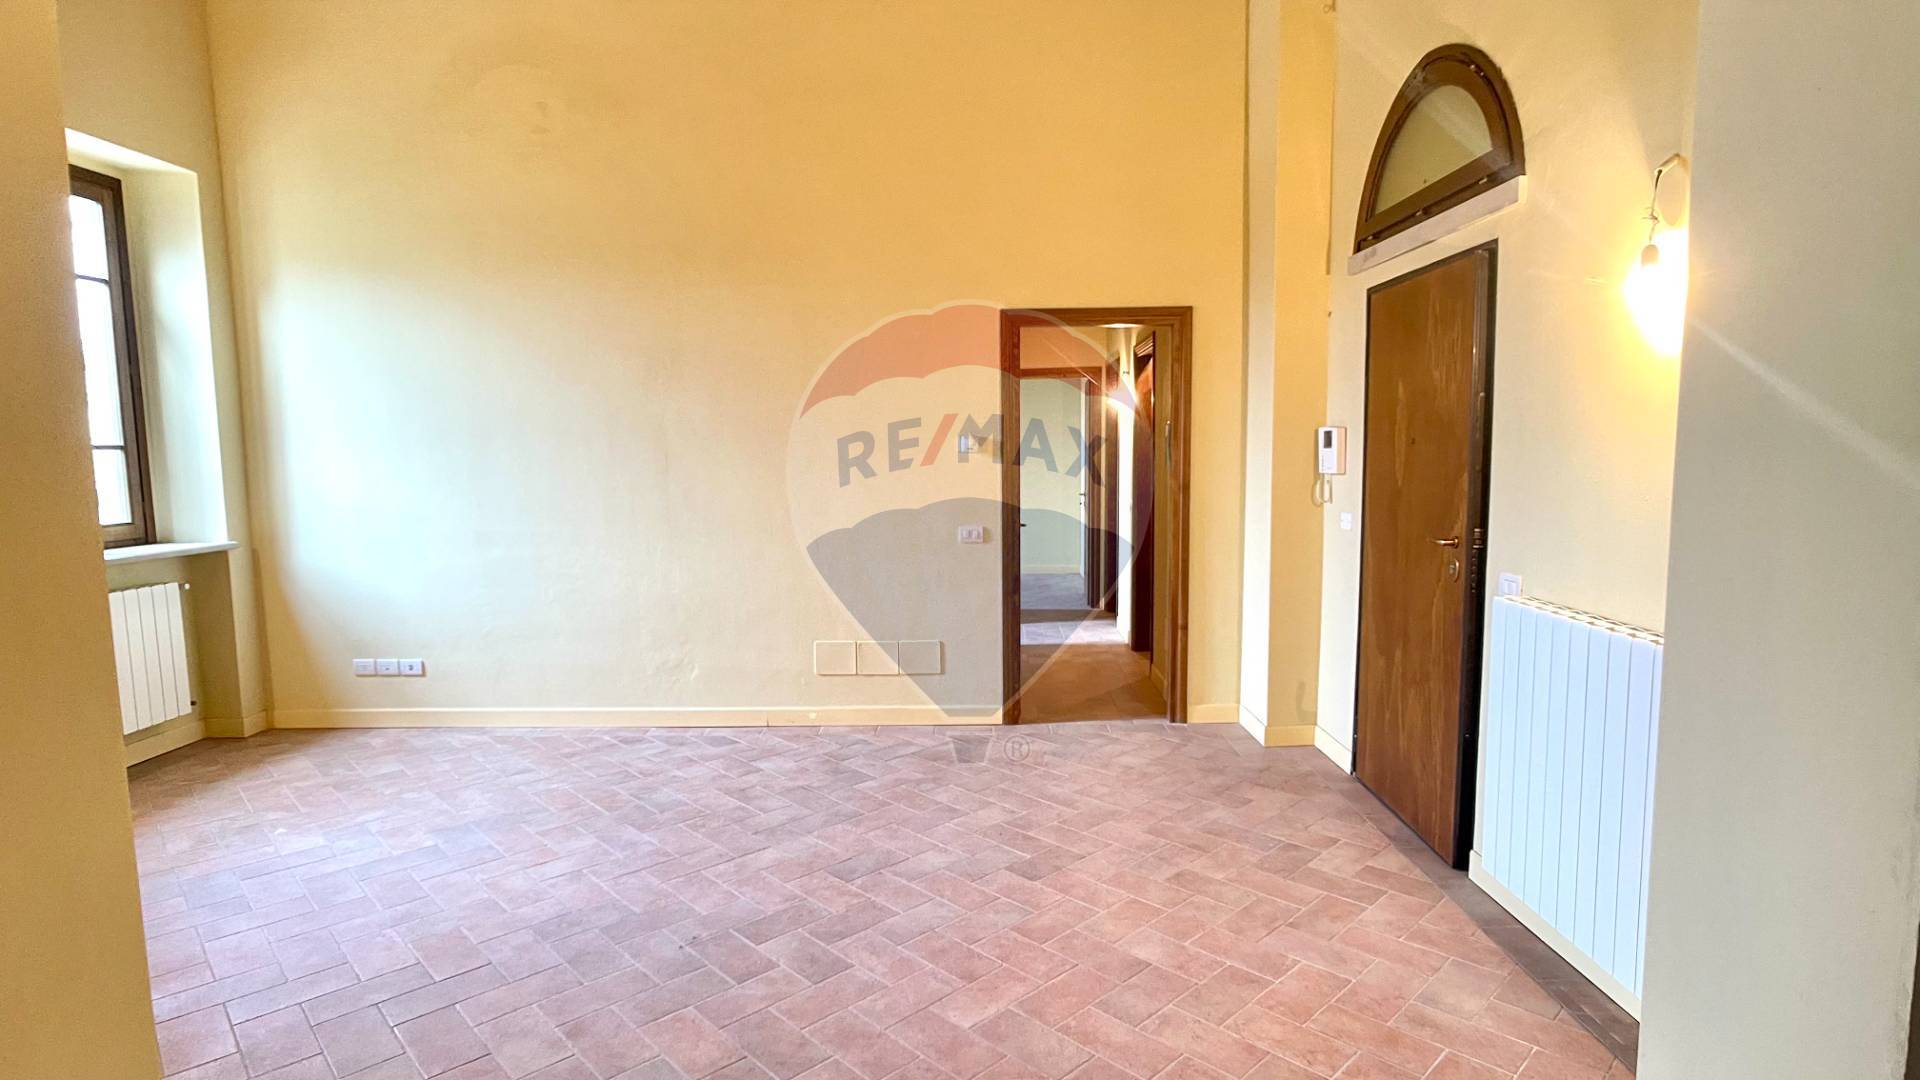 Appartamento in vendita a Casciana Terme Lari, 3 locali, zona Località: CascianaAlta, prezzo € 160.000 | PortaleAgenzieImmobiliari.it